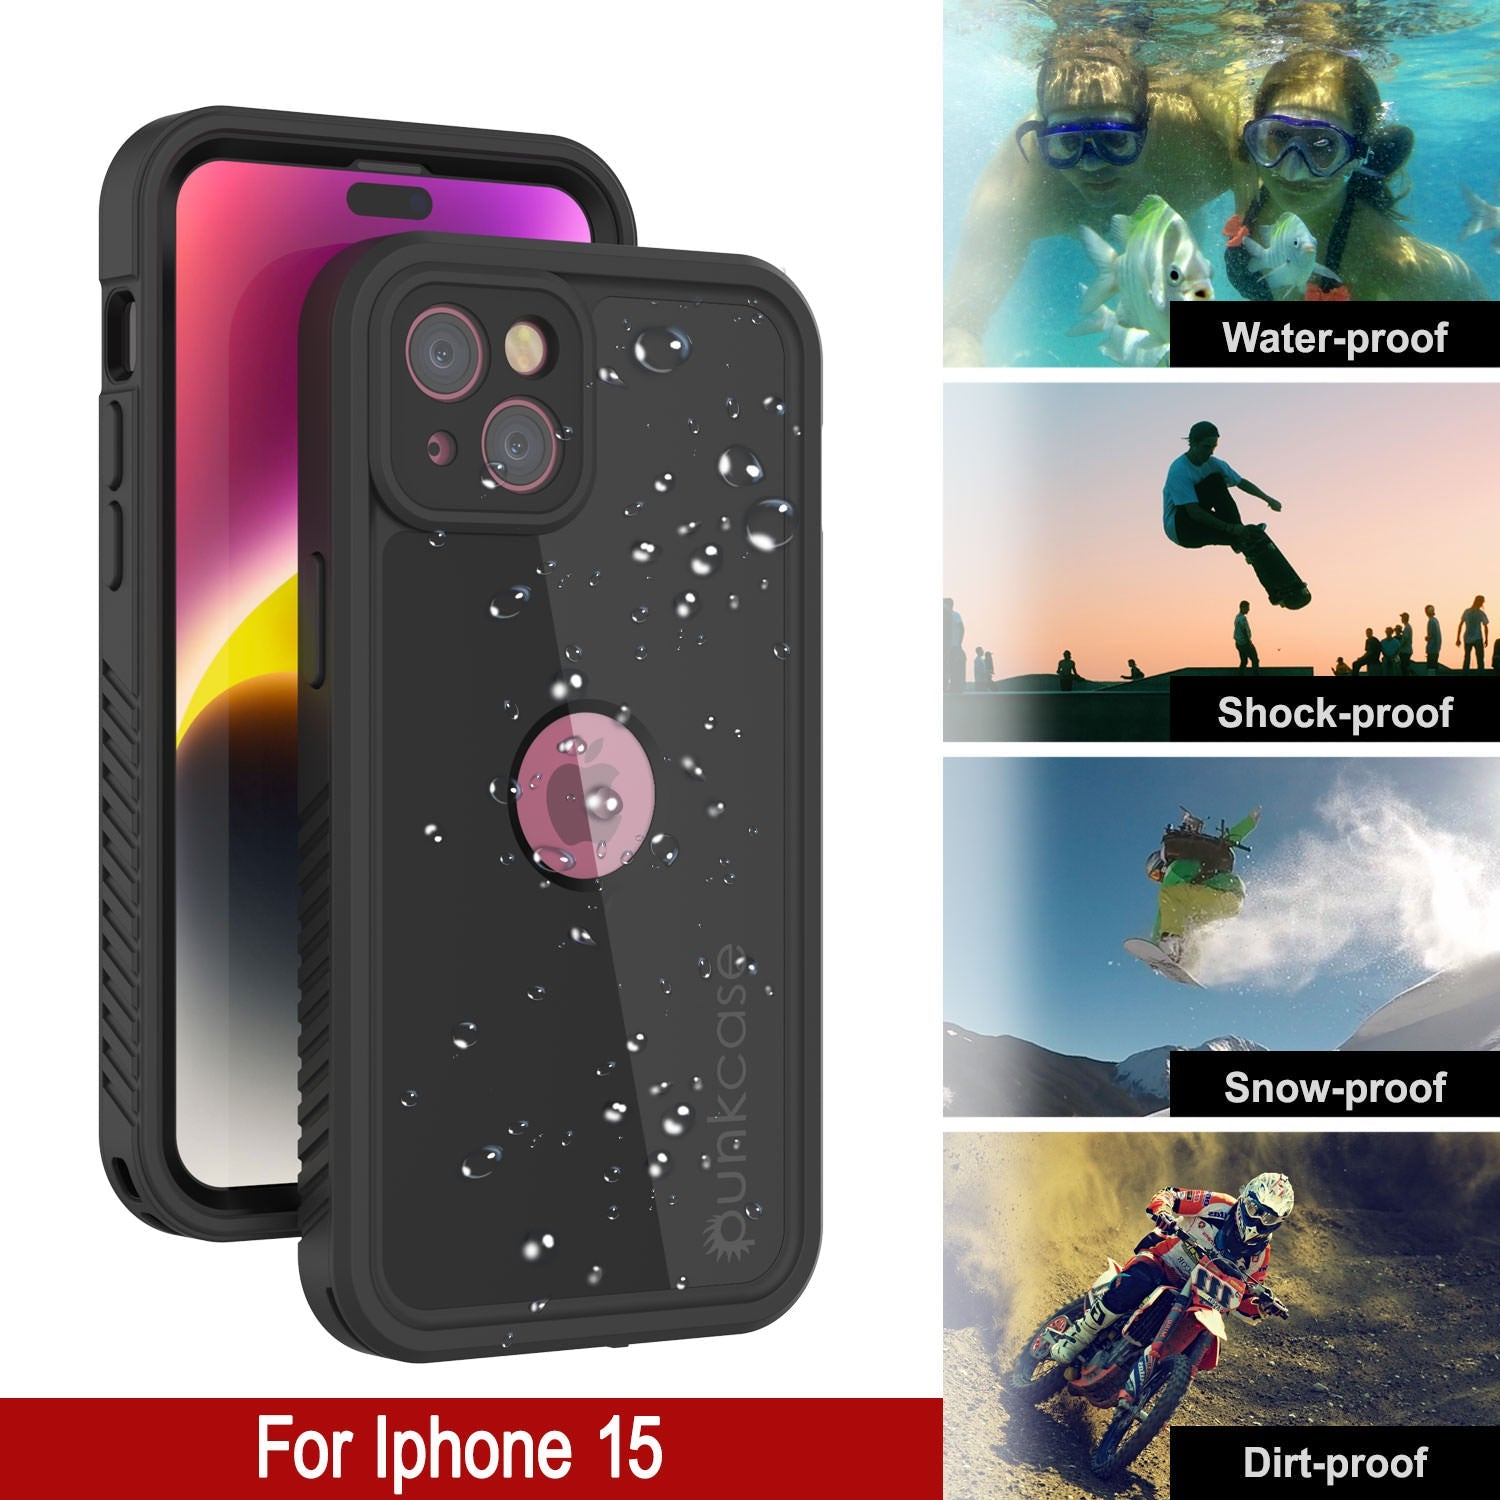 iPhone 15 Waterproof IP68 Case, Punkcase [Black] [StudStar Series] [Slim Fit]